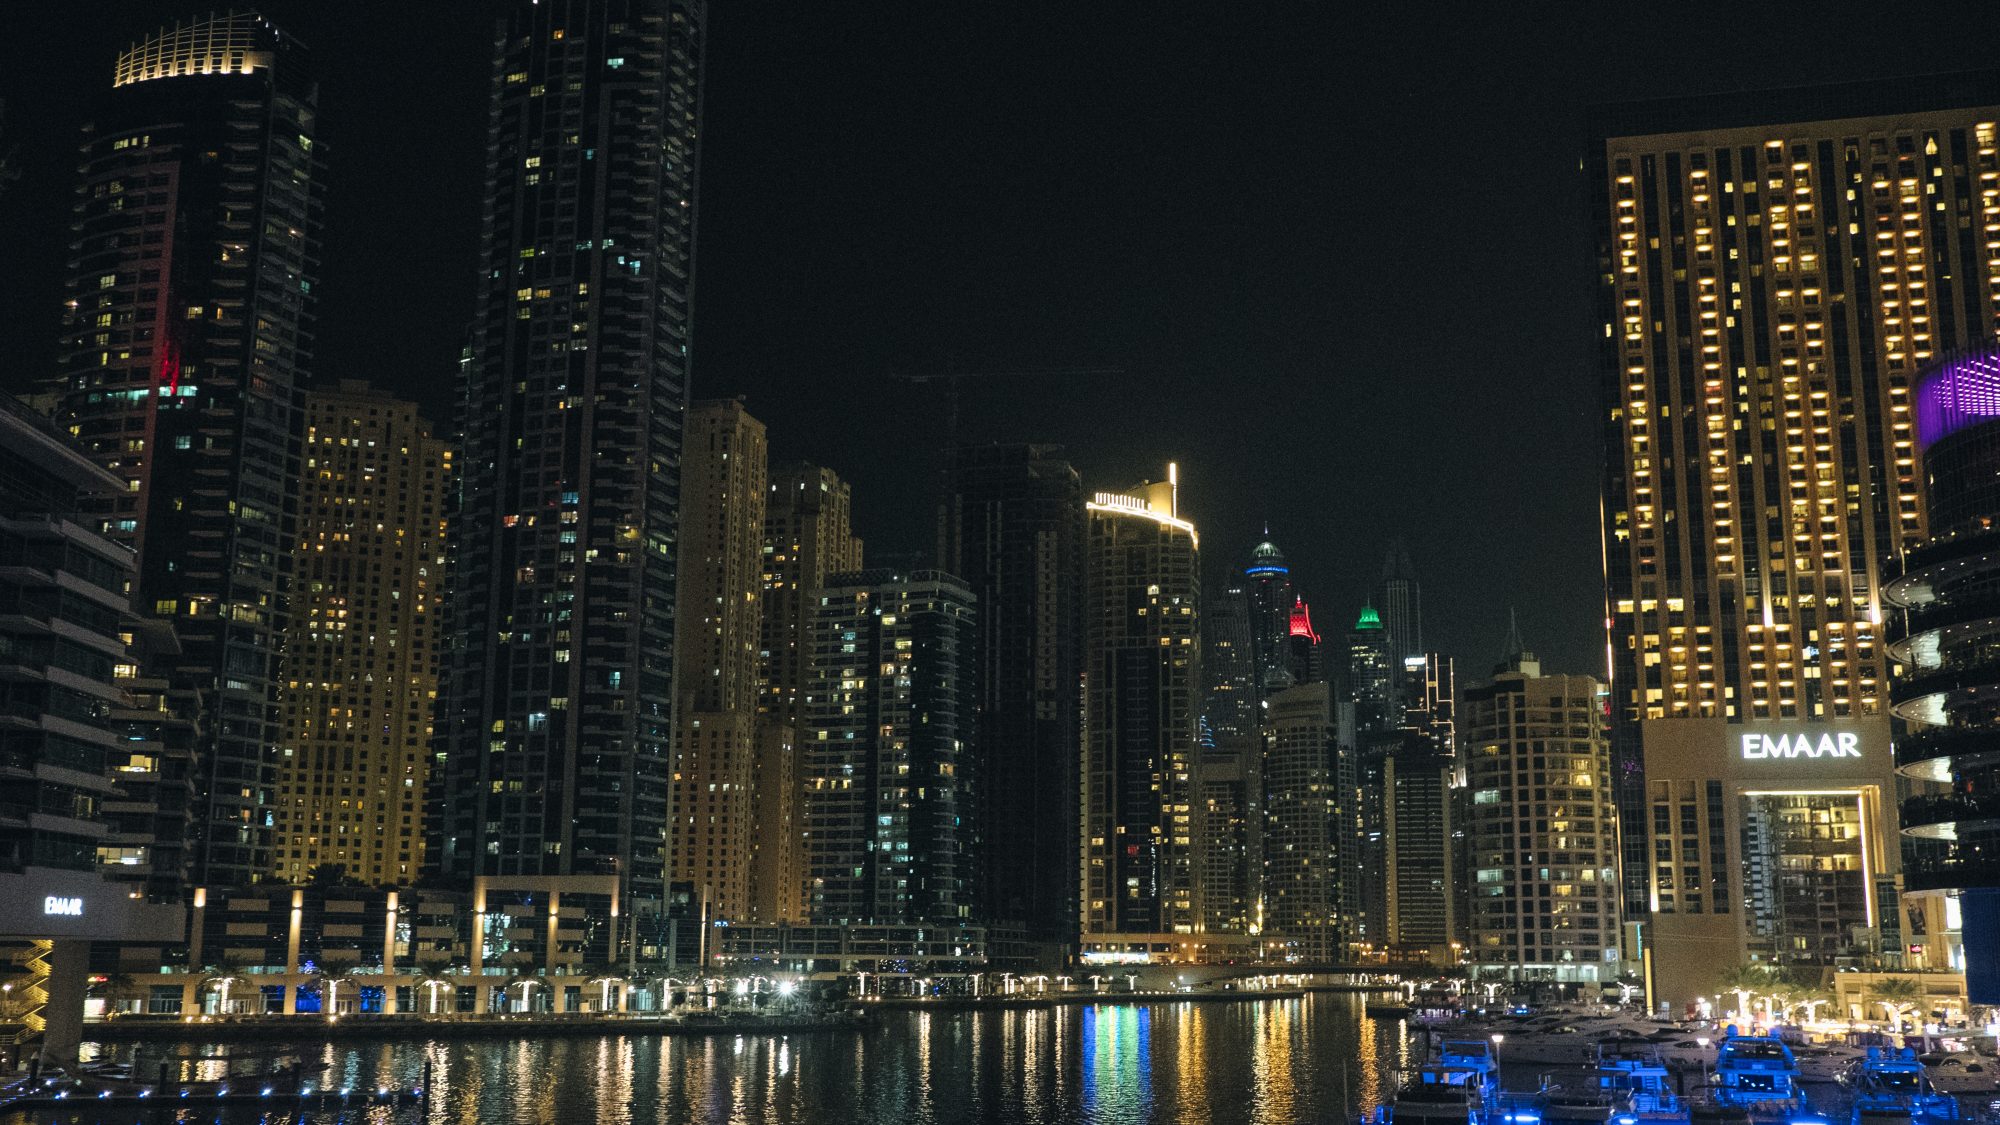 Dubaï Marina by night